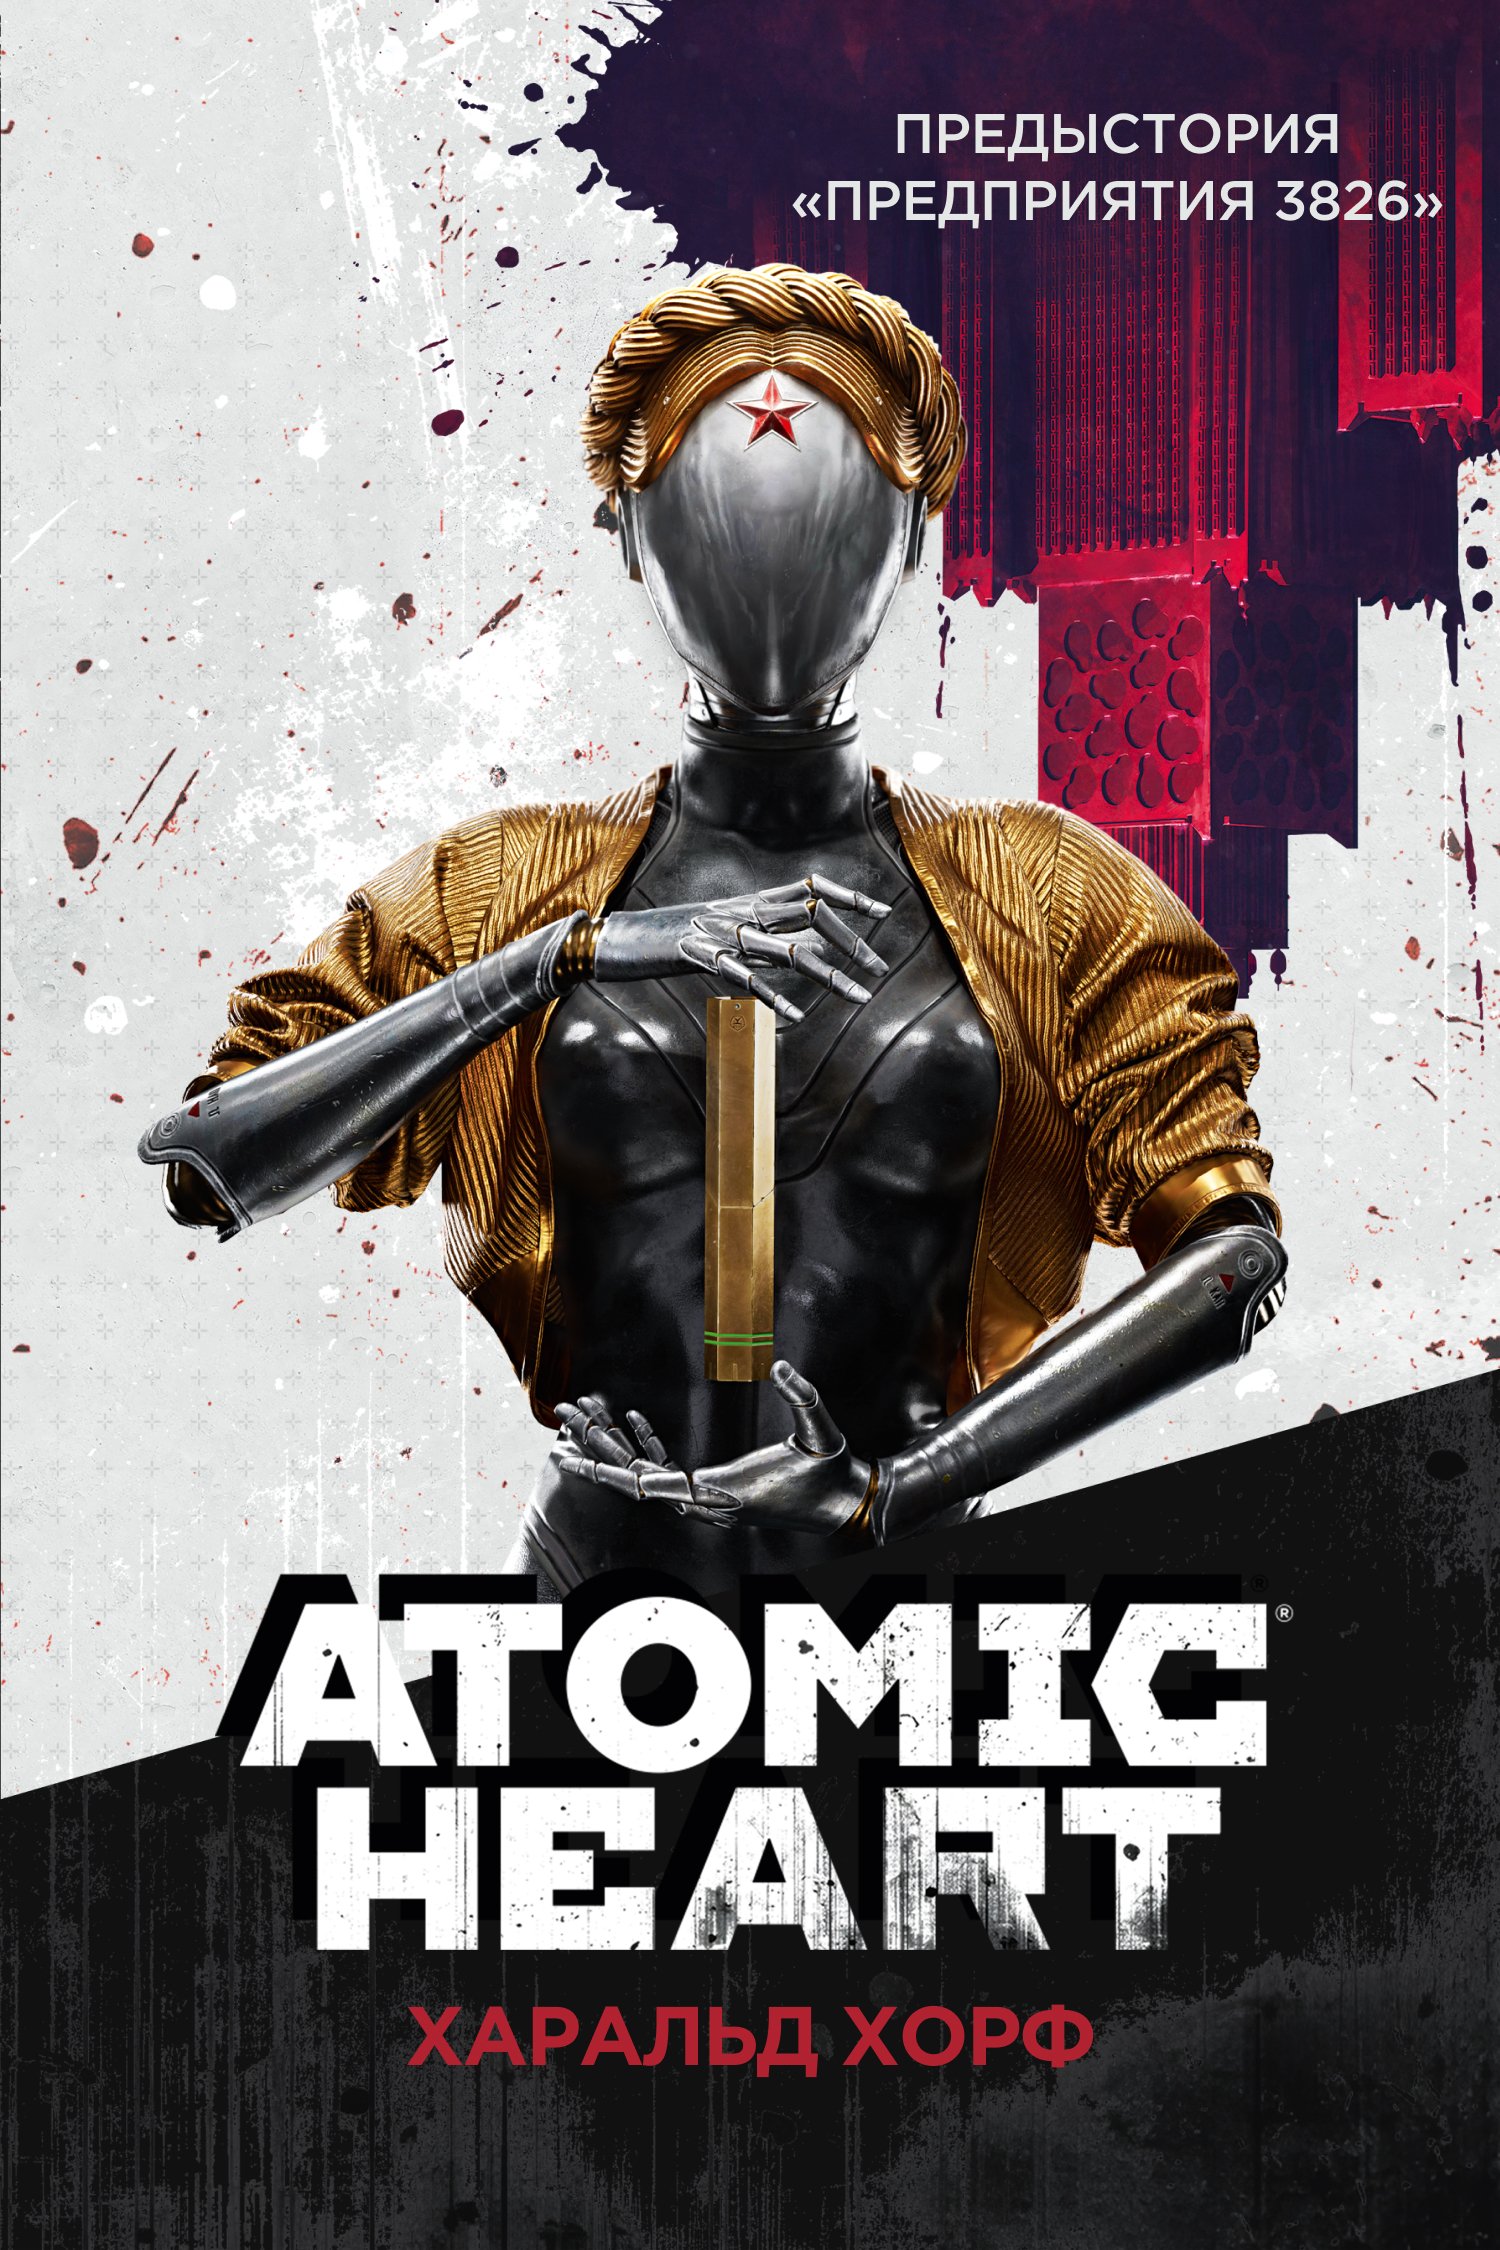 Читаем книгу Atomic Heart и узнаём историю «Предприятия 3826» 1